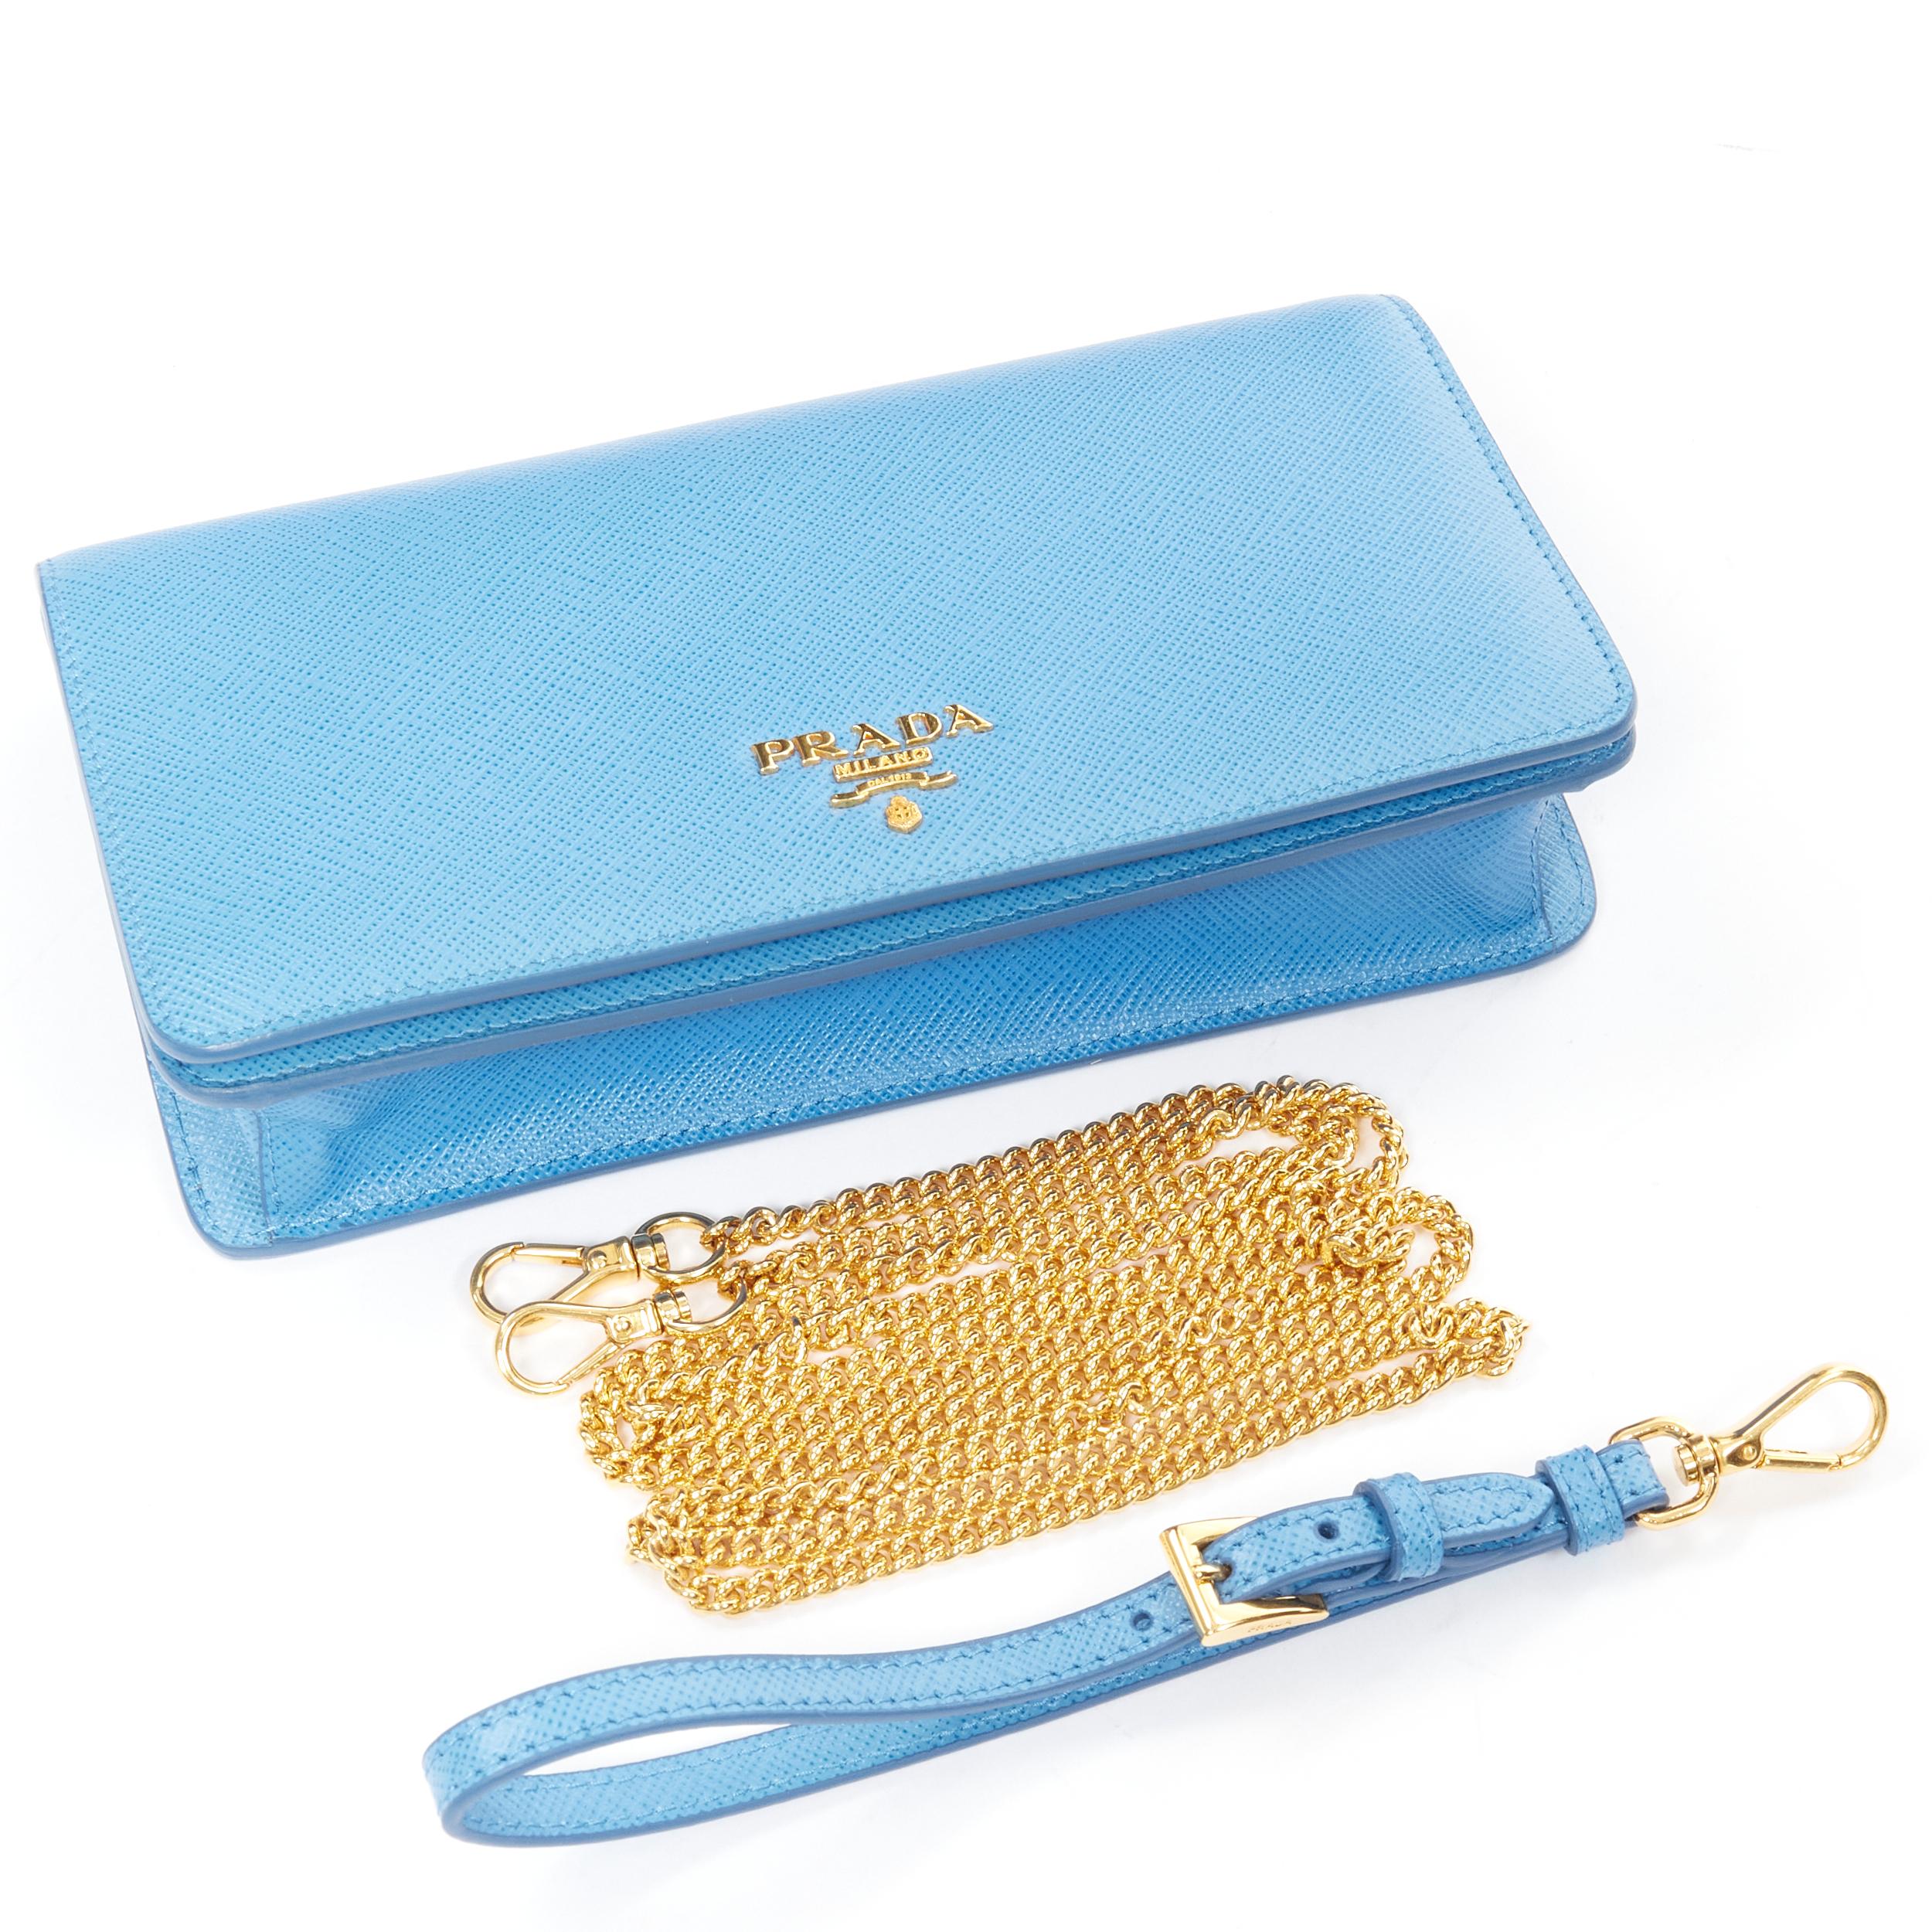 PRADA blue saffiano leather gold logo chain crossbody long wallet clutch bag WOC 4